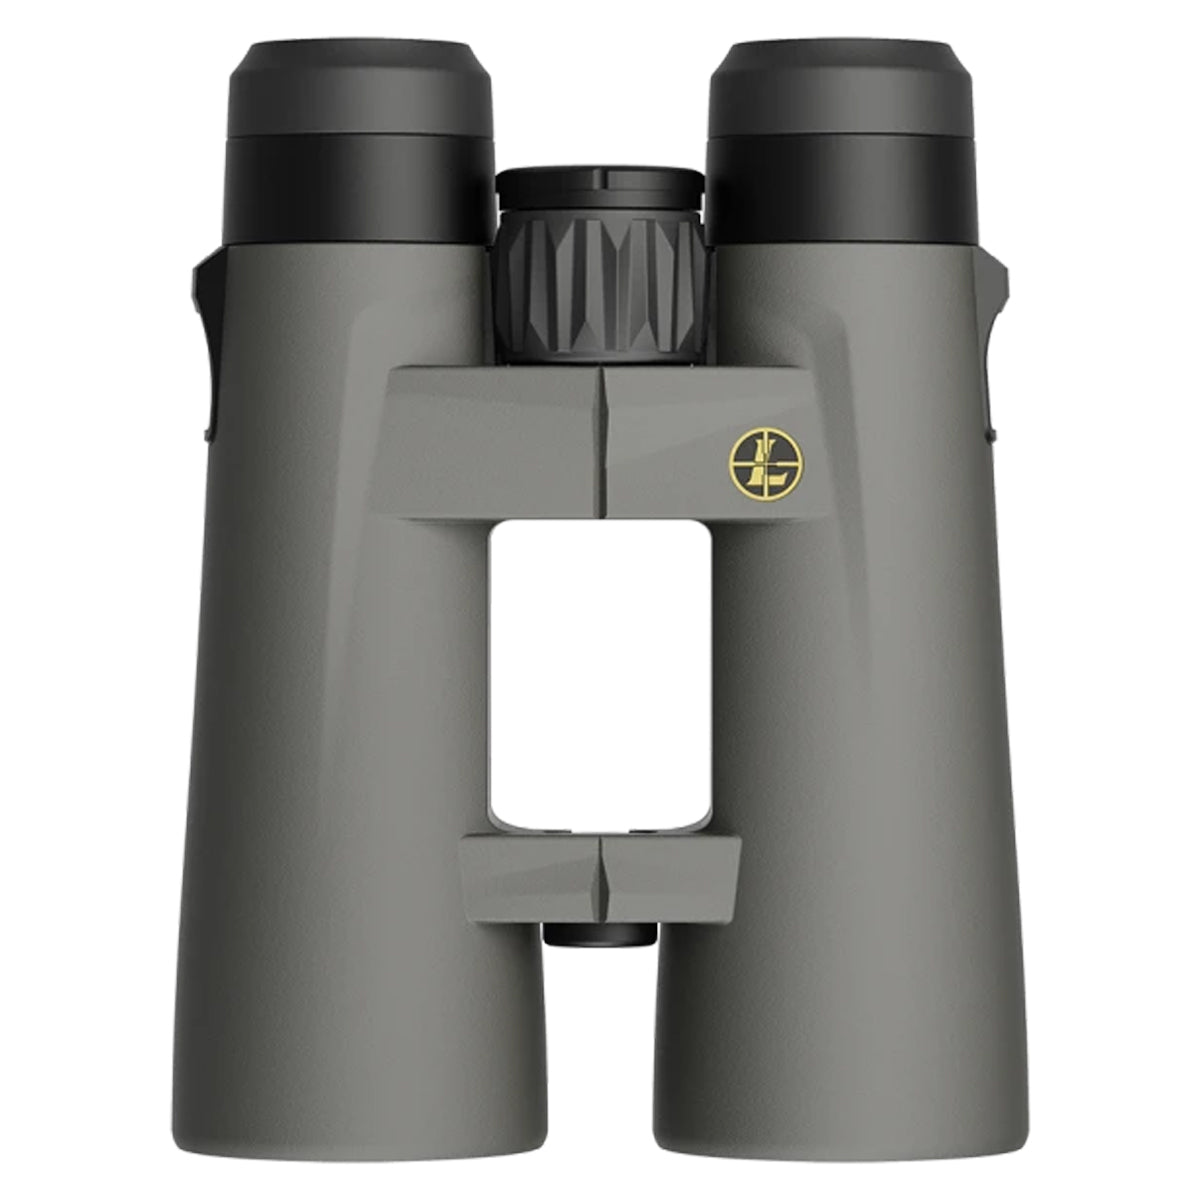 Leupold BX-4 Pro Guide HD 10x50mm Gen 2 Binocular (184762)